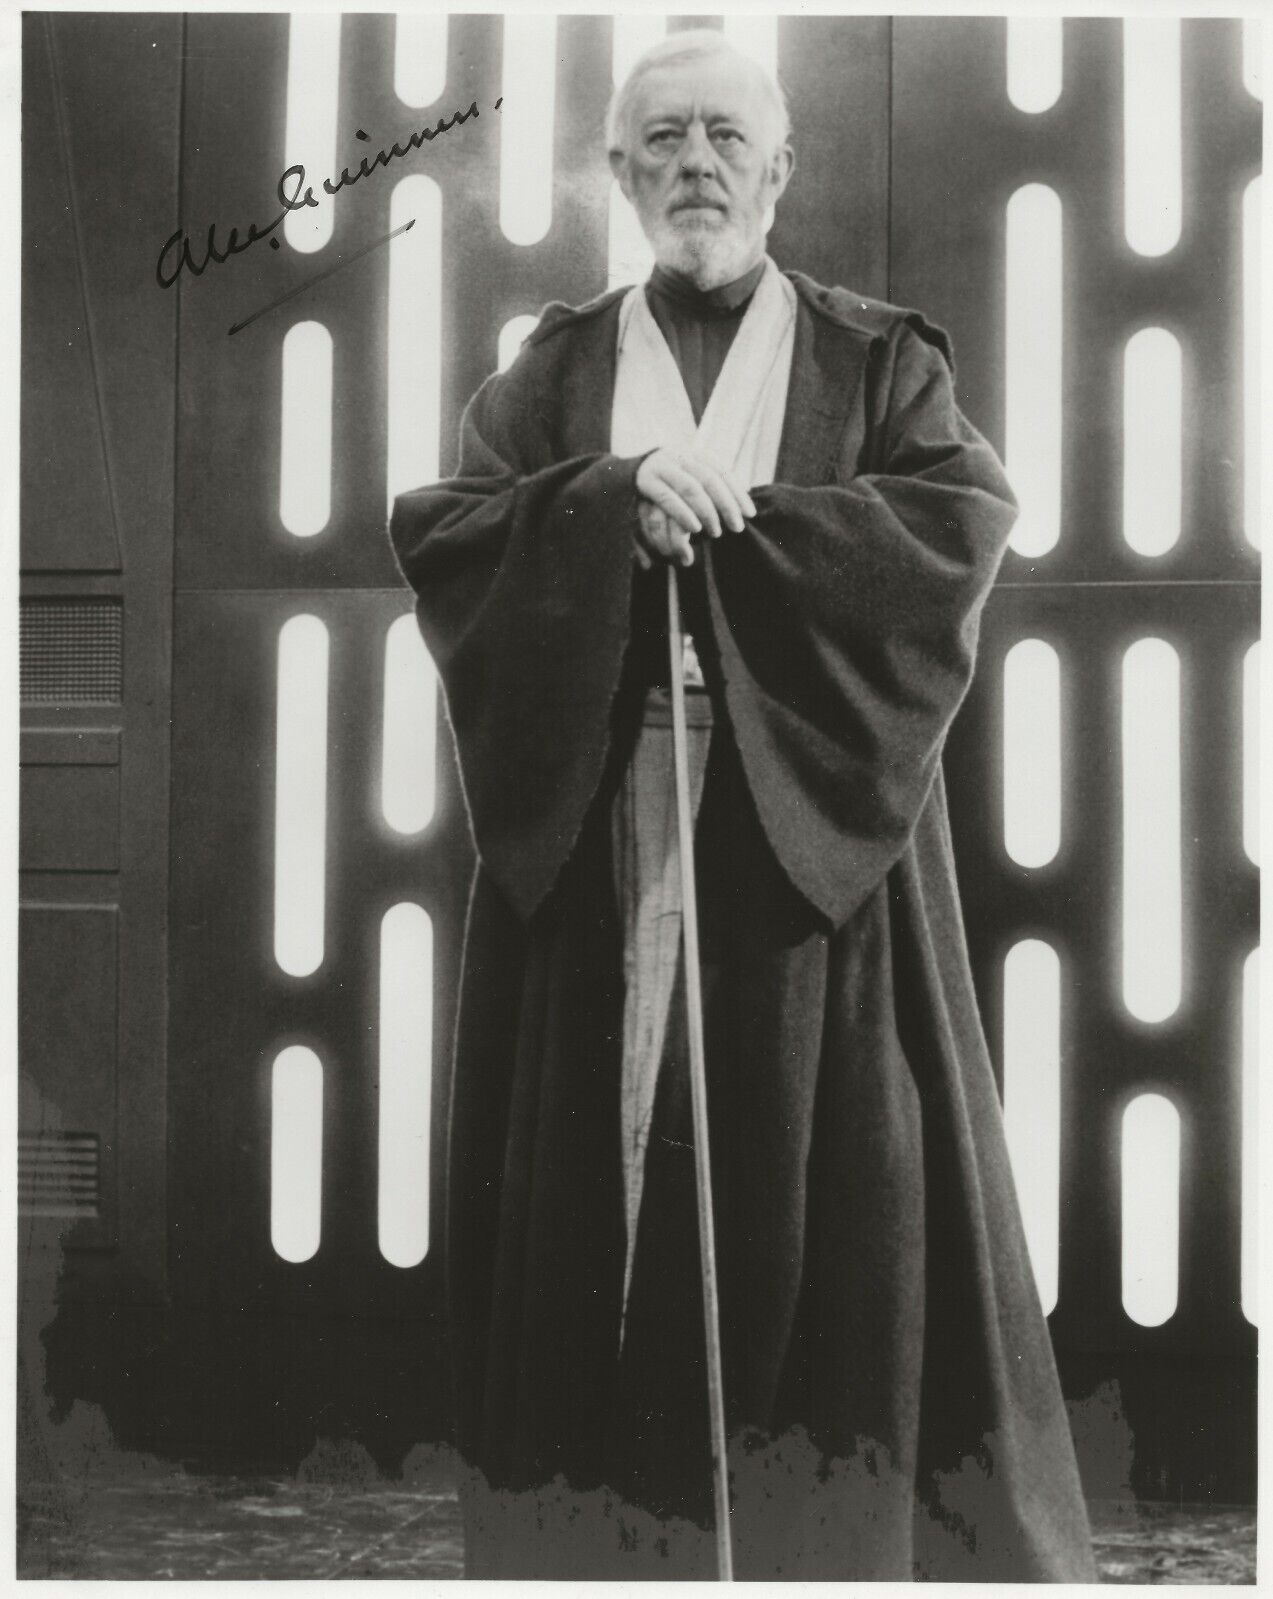 Alec Guinness SIGNED 8x10 B&W Photo - Obi Wan Kenobi - Star Wars - MUST SEE